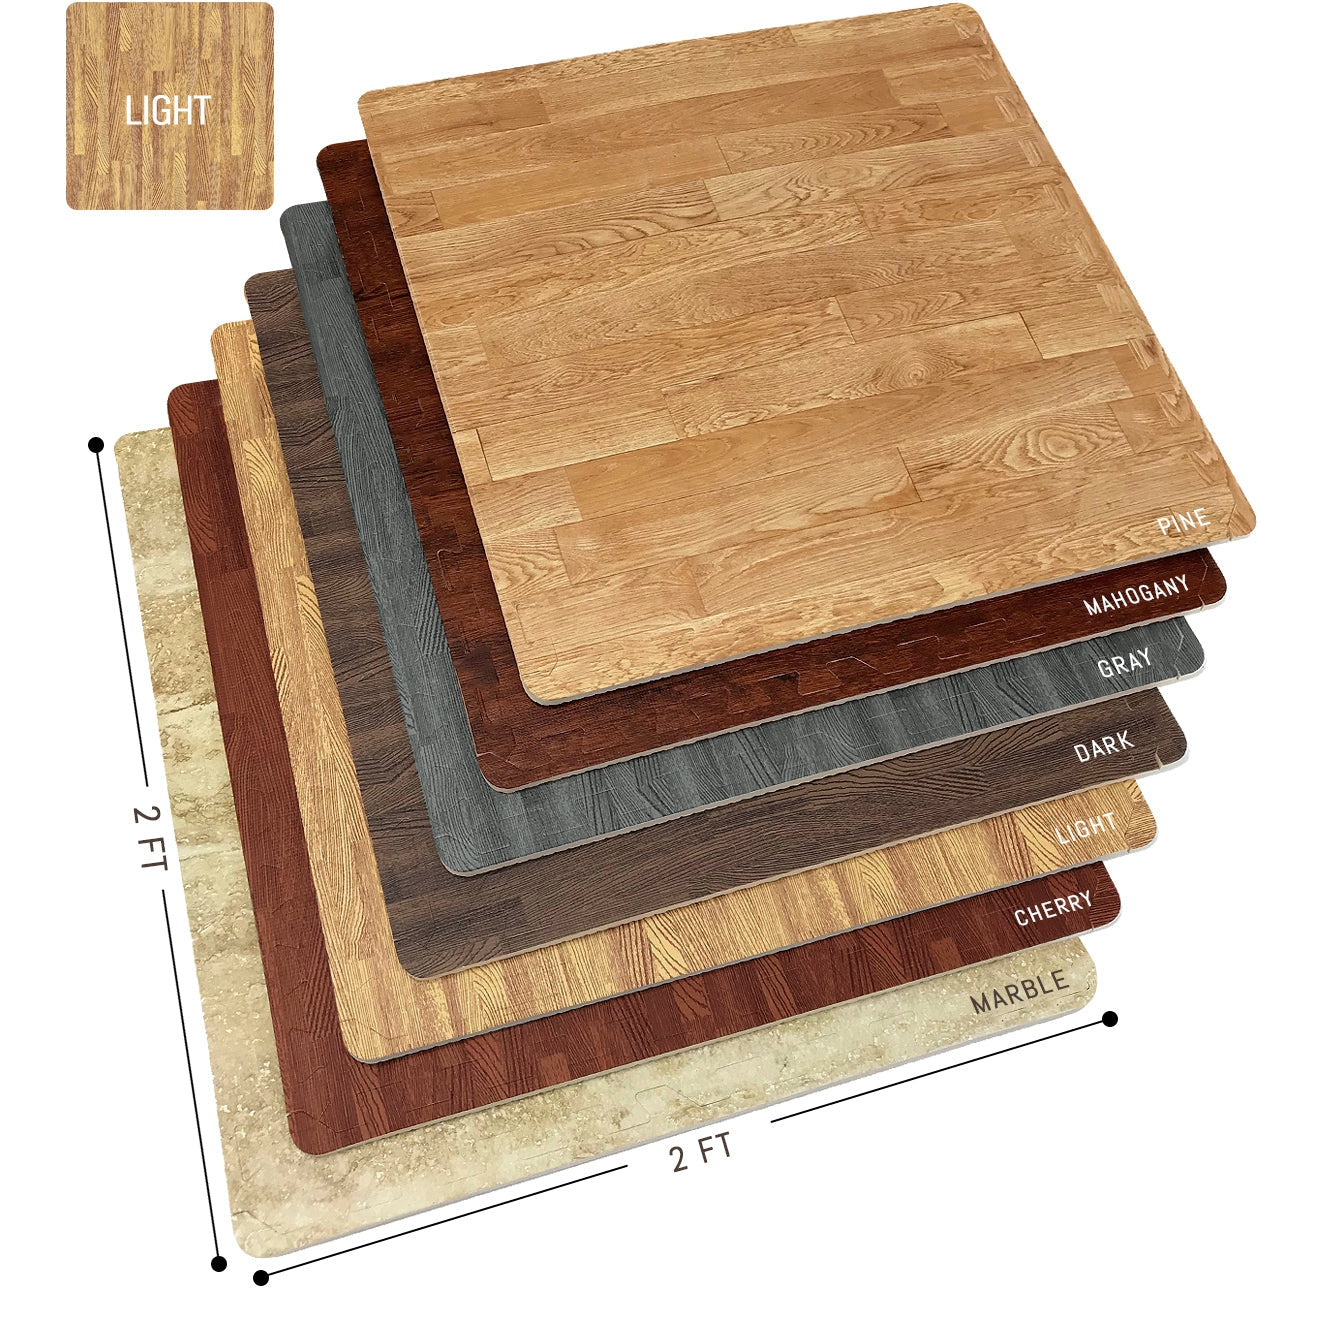 24 in. x 24 in. Gray Foam Mat Interlocking FloorTiles w/ Eva Foam Padd